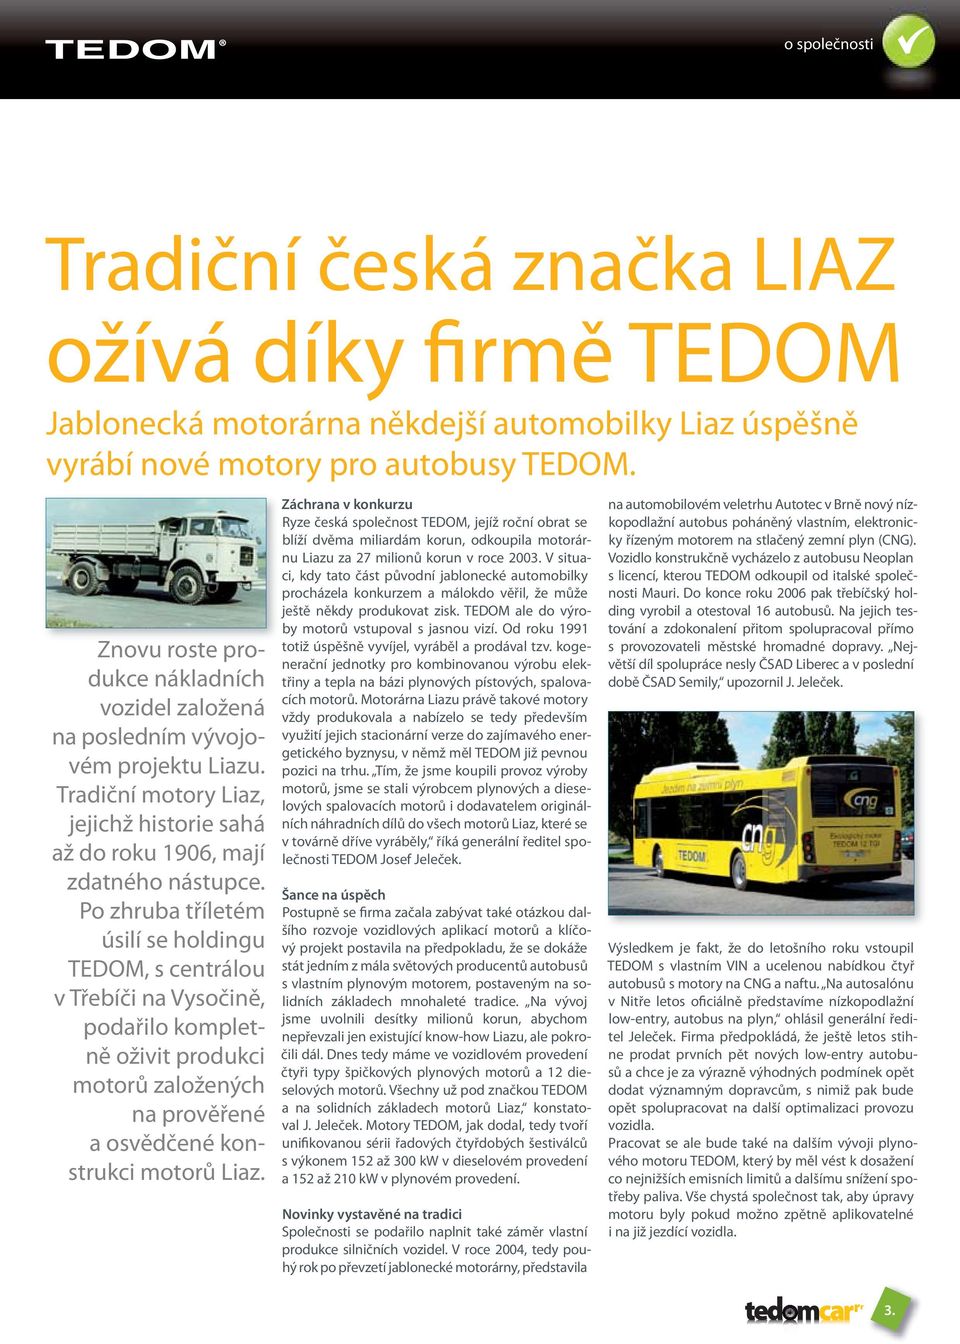 Po zhruba tříletém úsilí se holdingu TEDOM, s centrálou v Třebíči na Vysočině, podařilo kompletně oživit produkci motorů založených na prověřené a osvědčené konstrukci motorů Liaz.